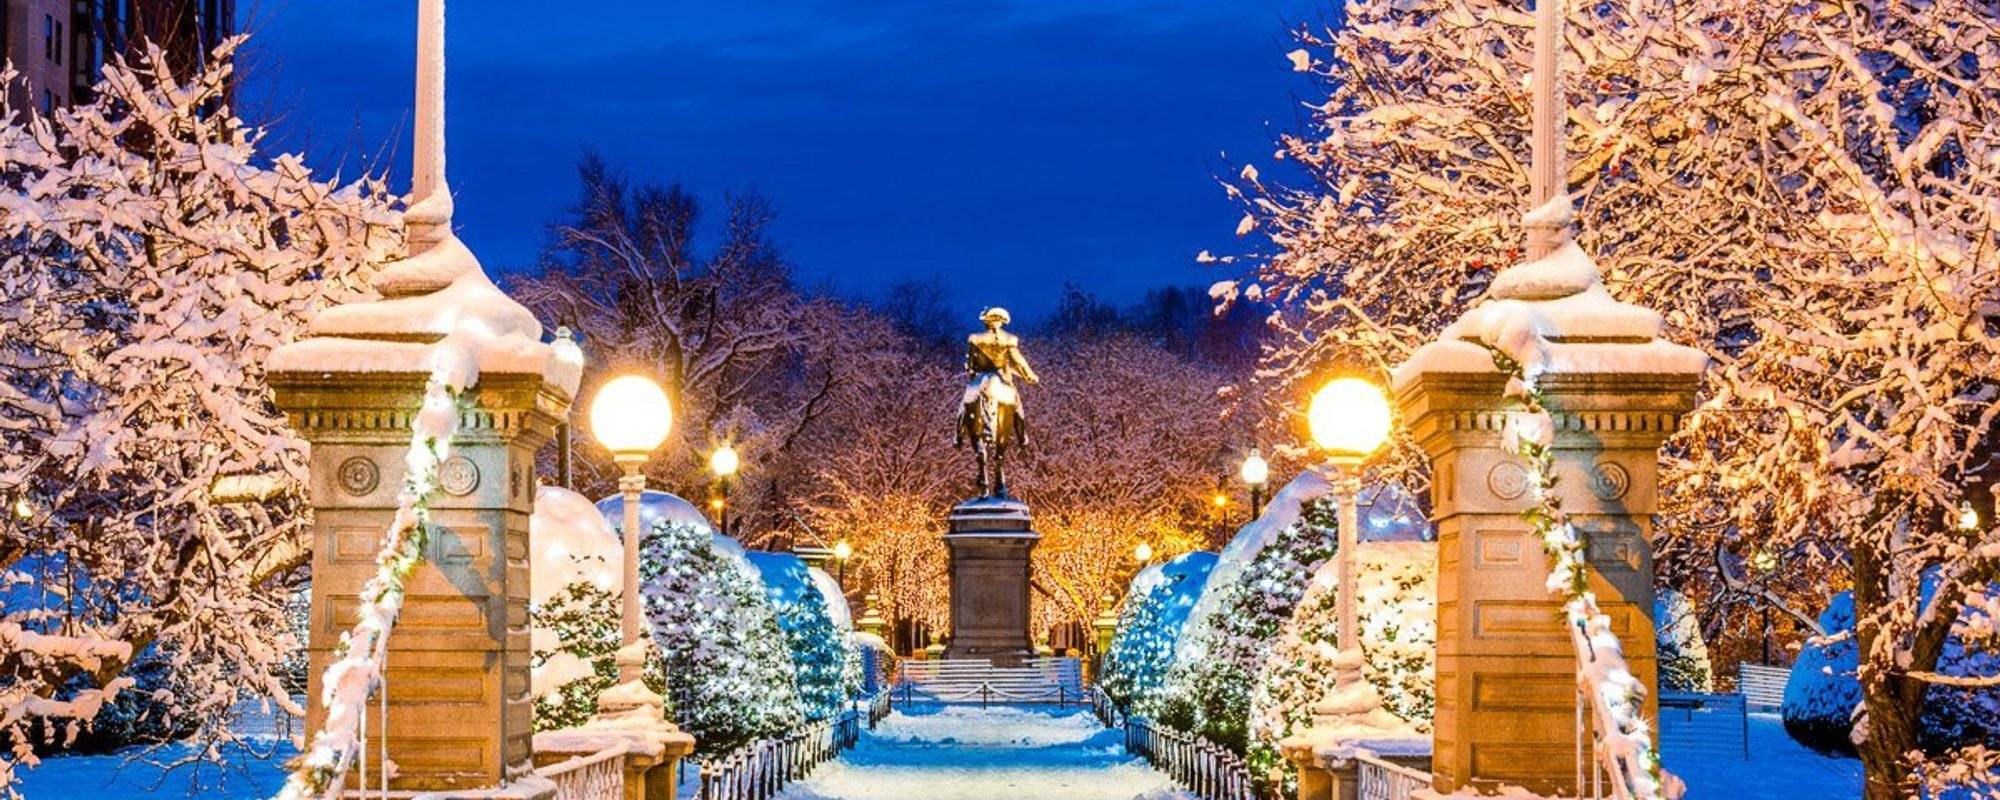 Boston Common in the Winter